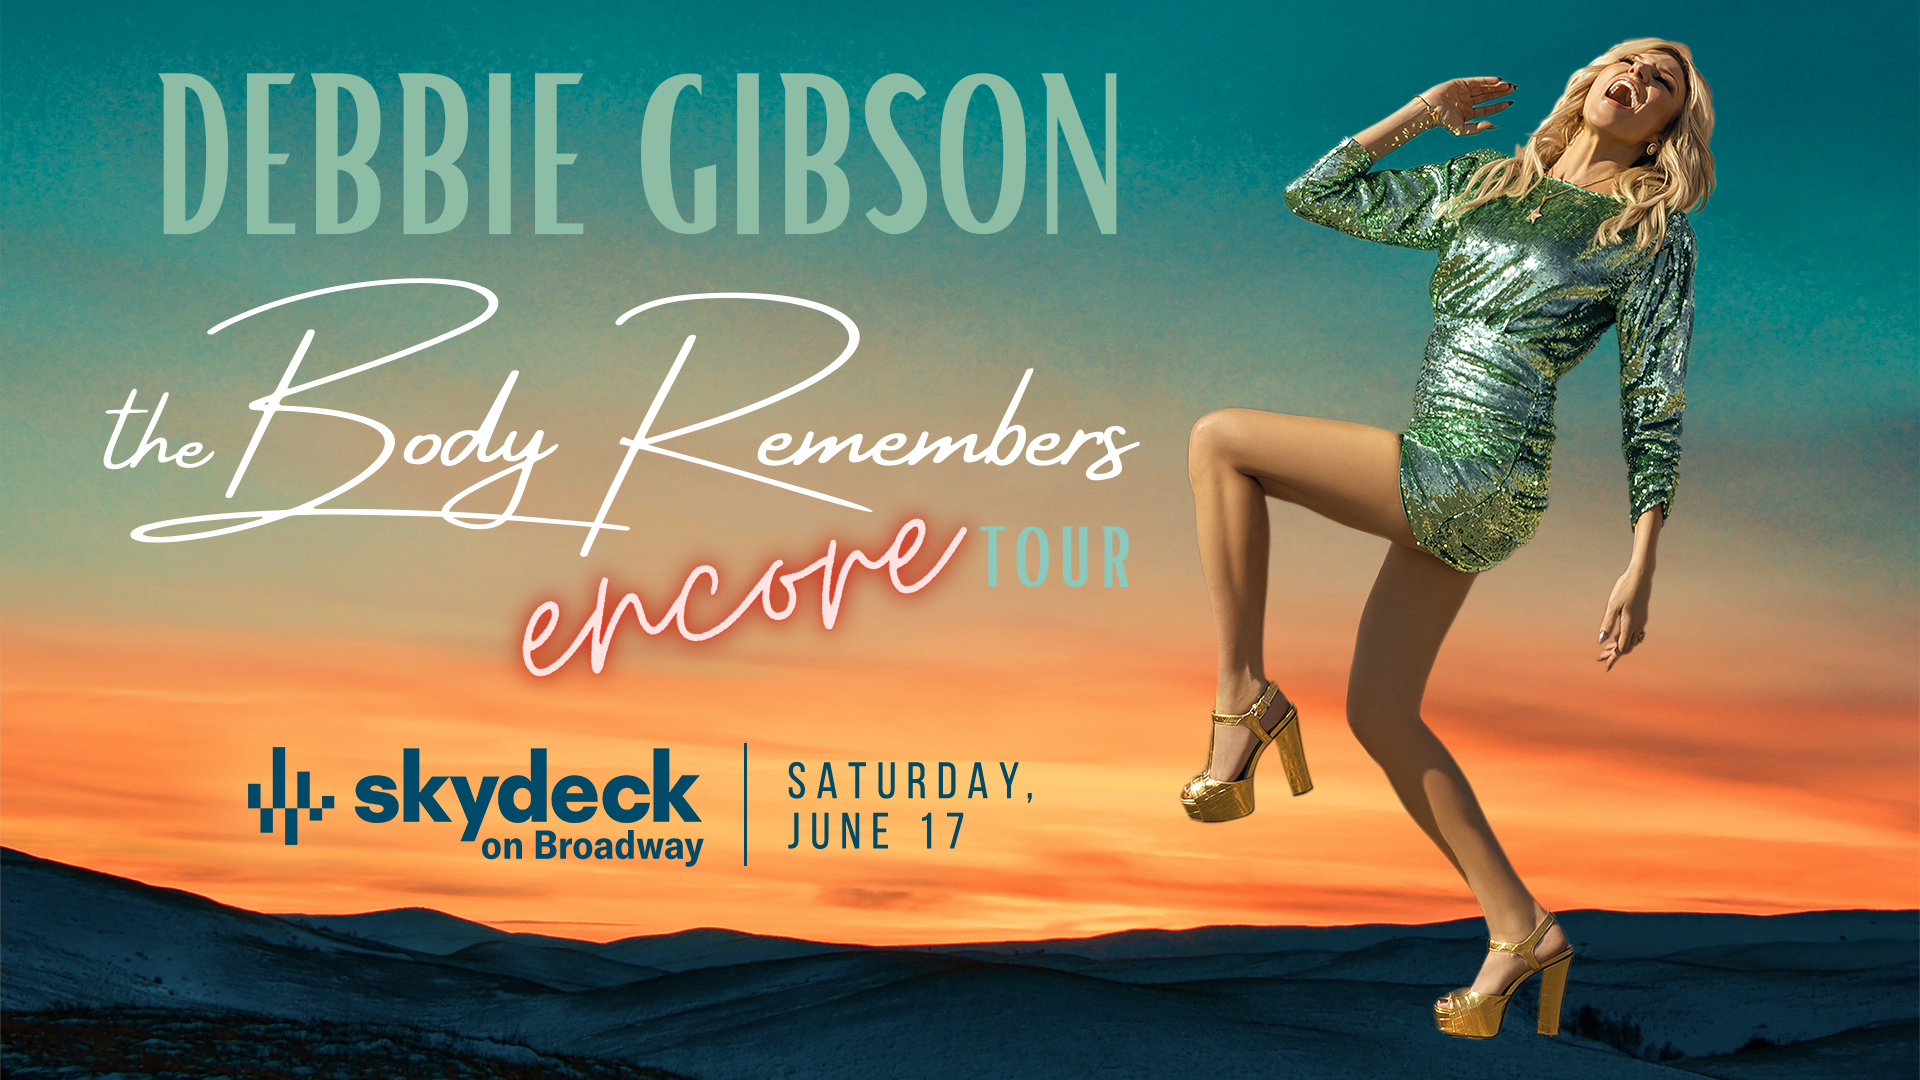 Debbie Gibson on Skydeck - hero